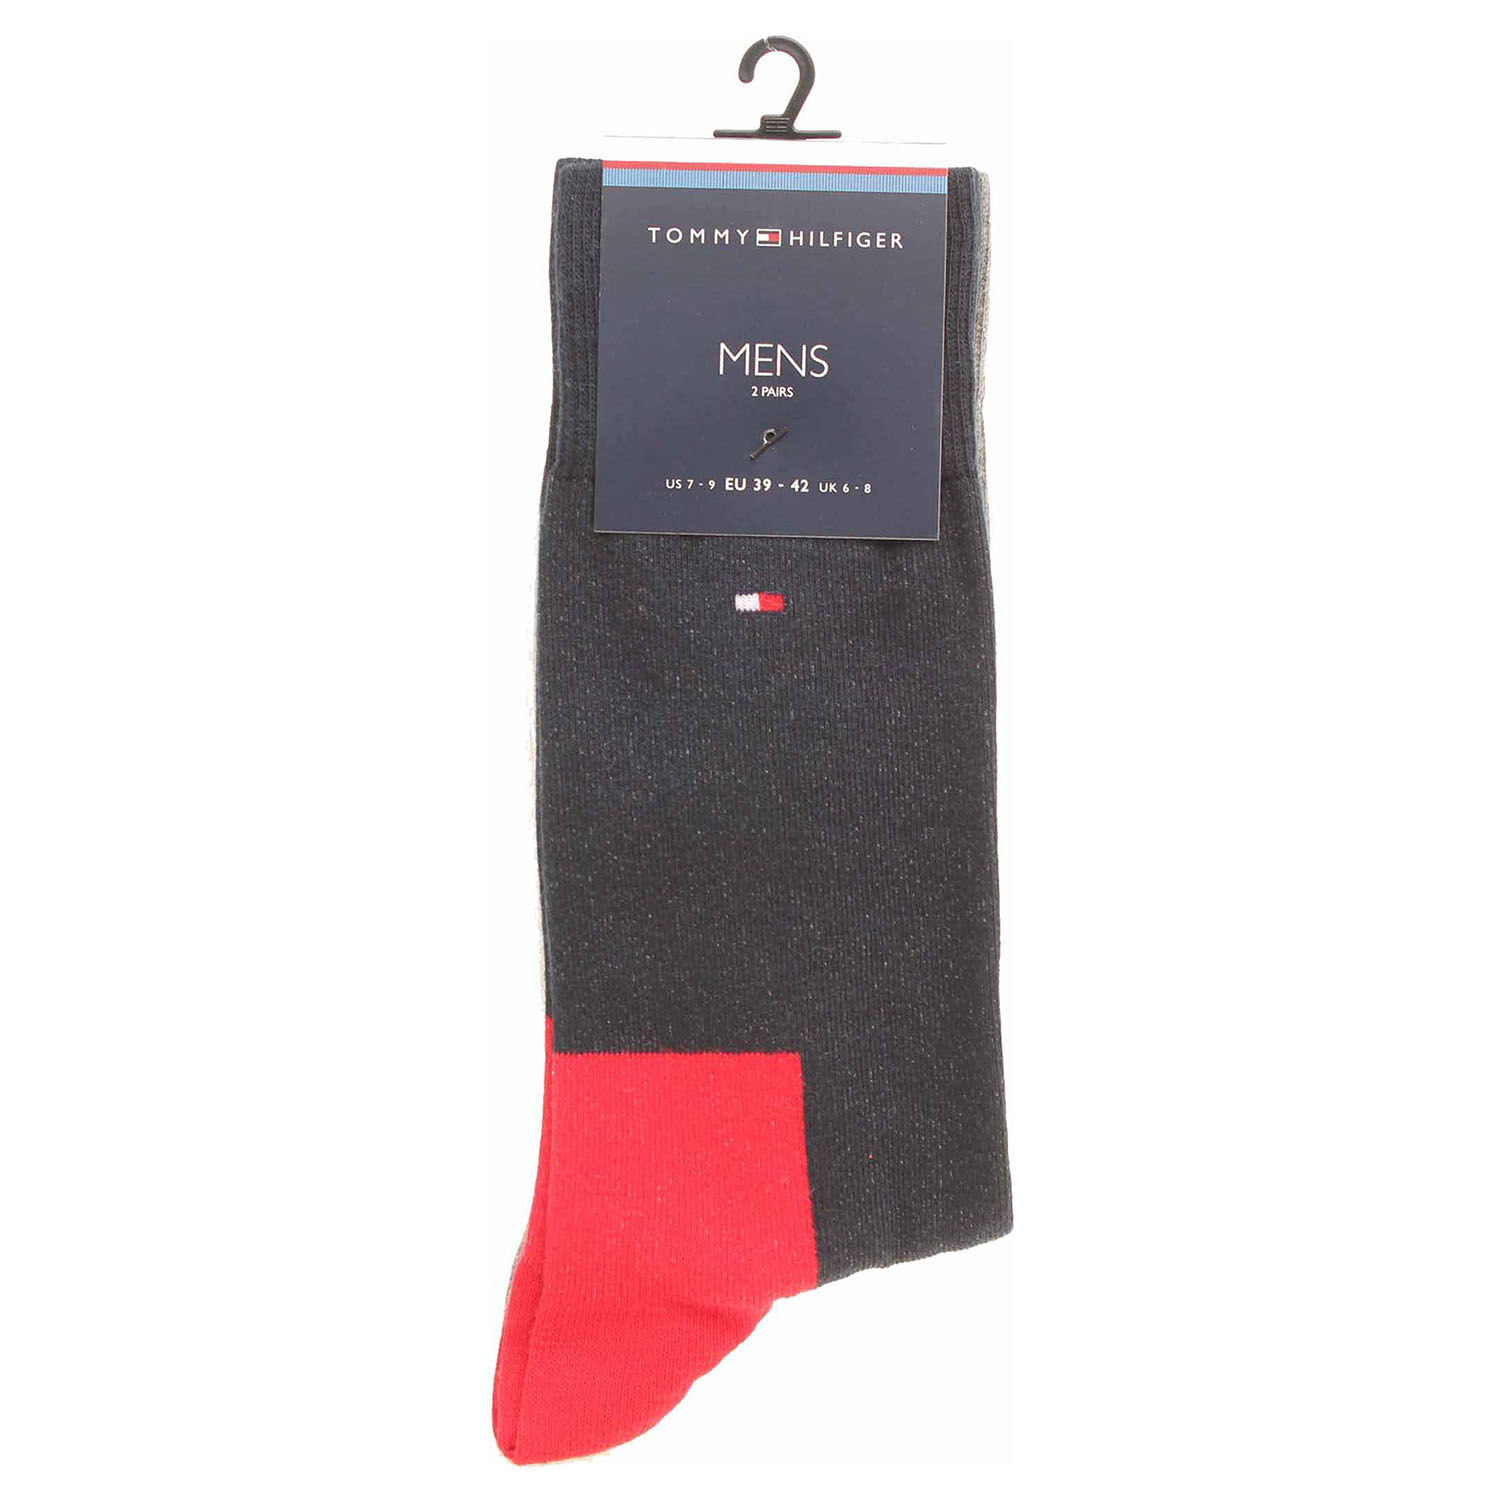 Tommy Hilfiger pánské ponožky 471010001 tommy original 46